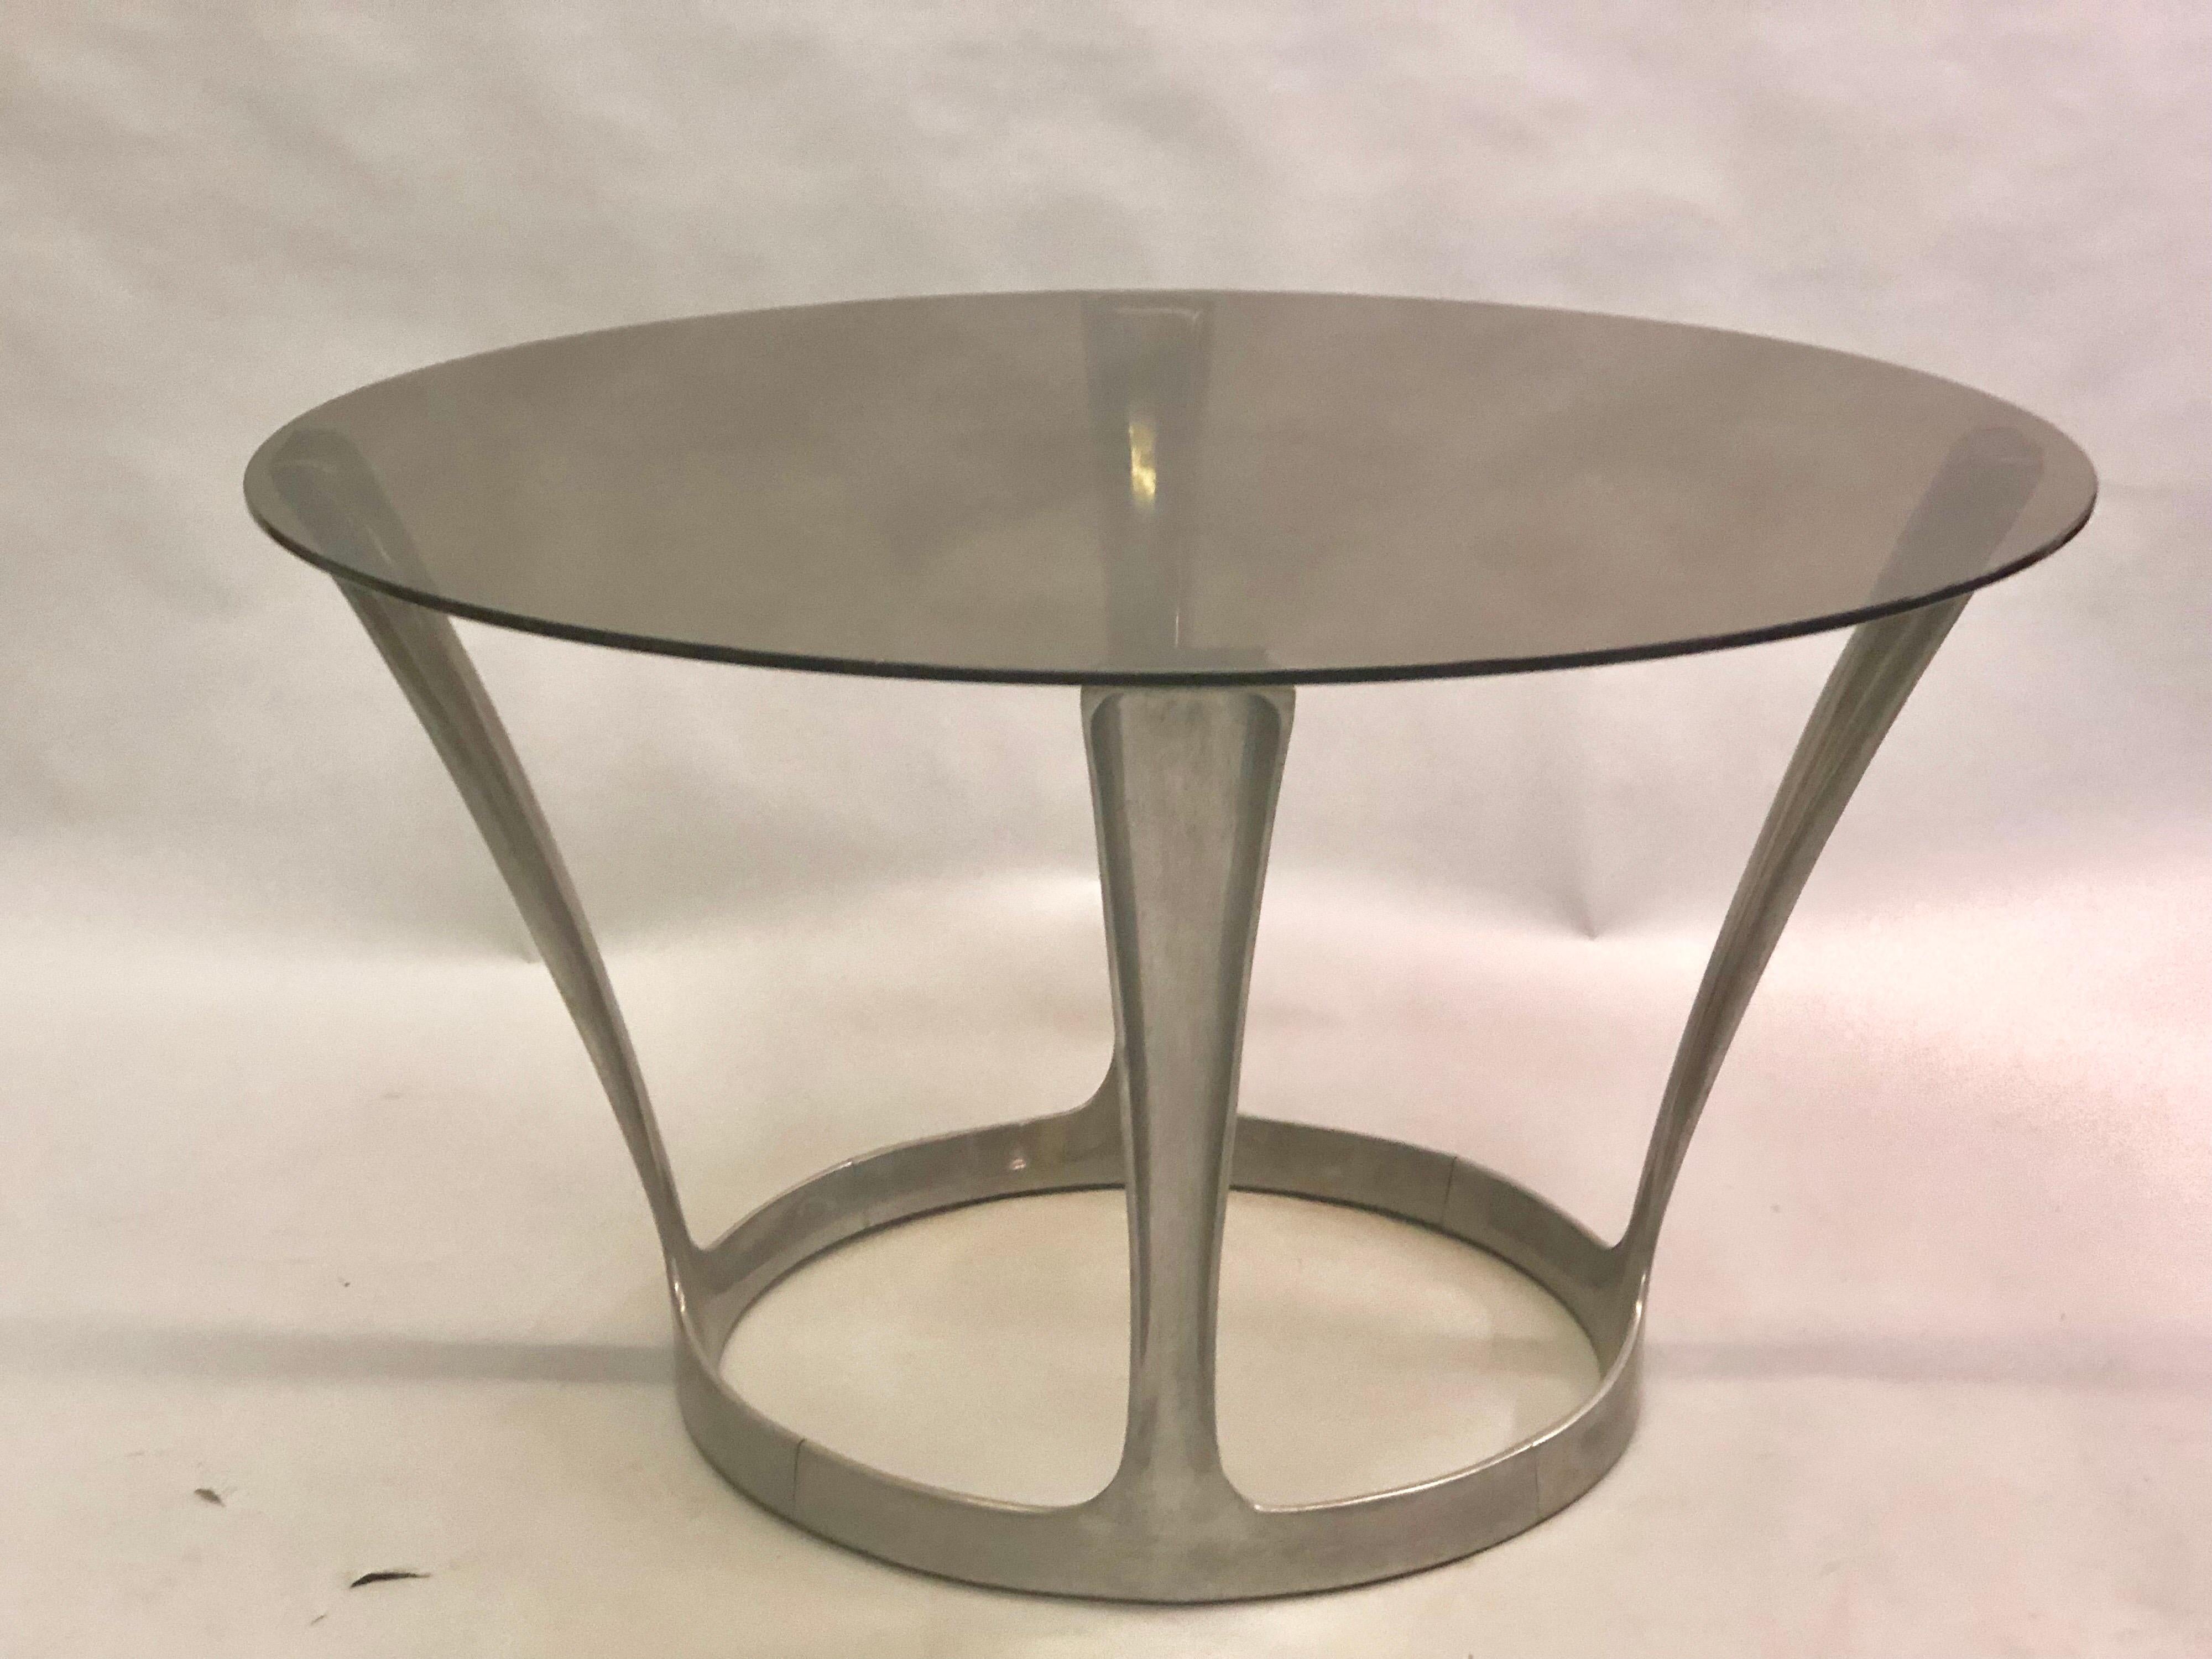 Runder französischer Mid-Century Modern Esstisch mit einem Fuß aus Aluminiumguss und einer Platte aus Rauchglas von Boris Tabacoff, um 1960.

Wir können den Aluminiumsockel bis zur Perfektion polieren. 

  